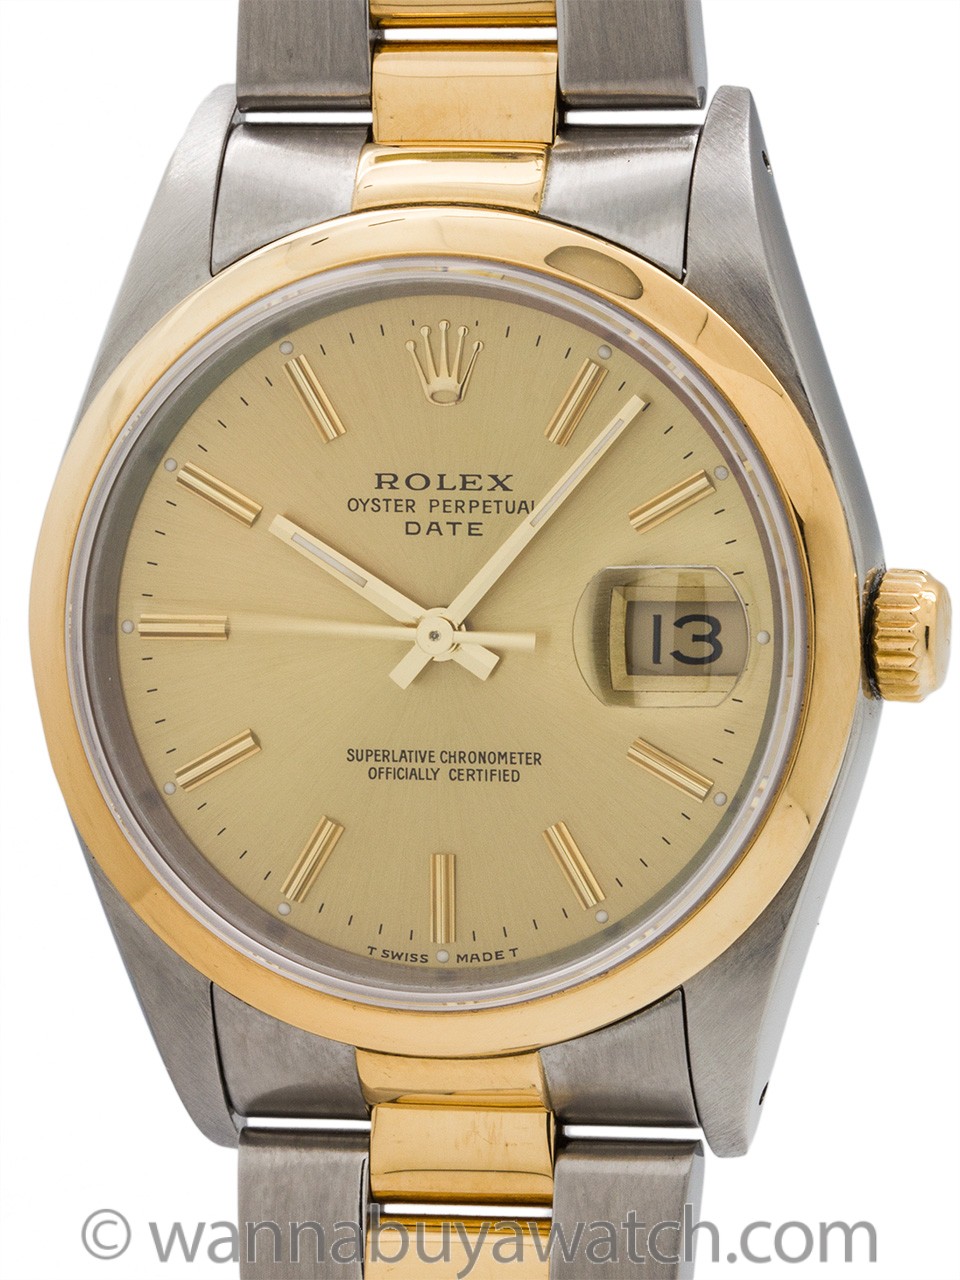 Rolex Oyster Perpetual Date ref 15223 